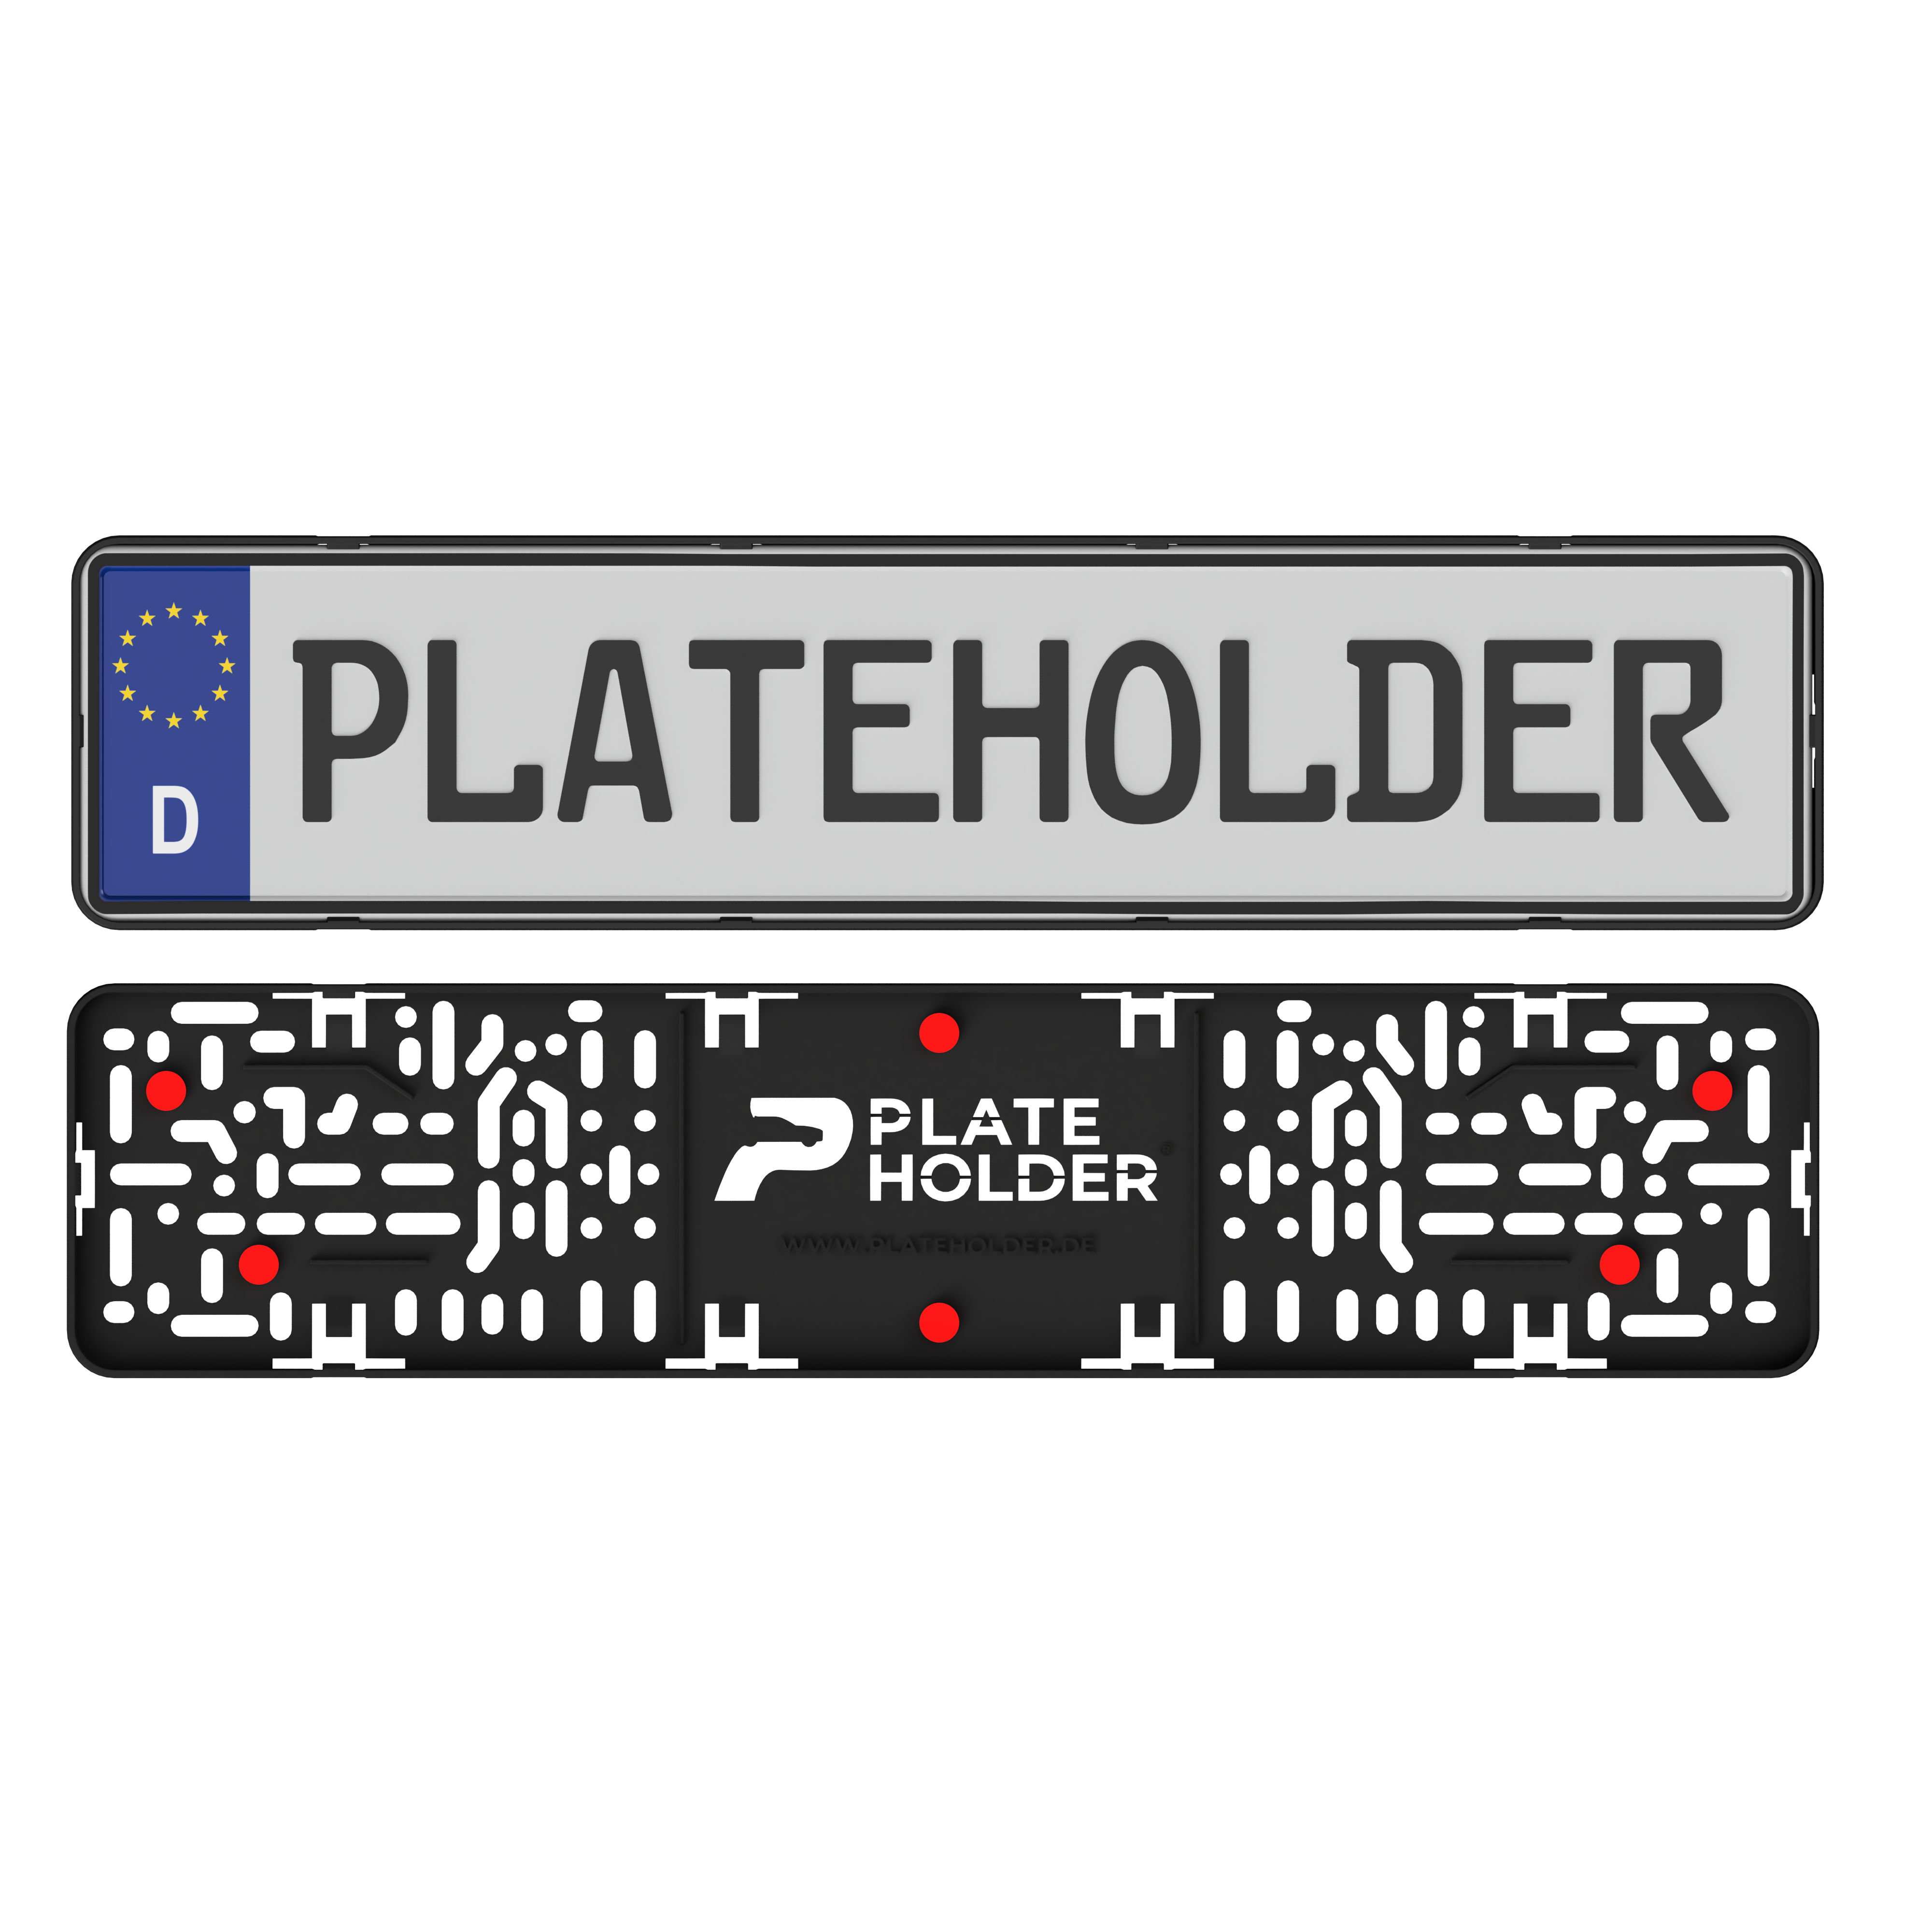 License plate holder